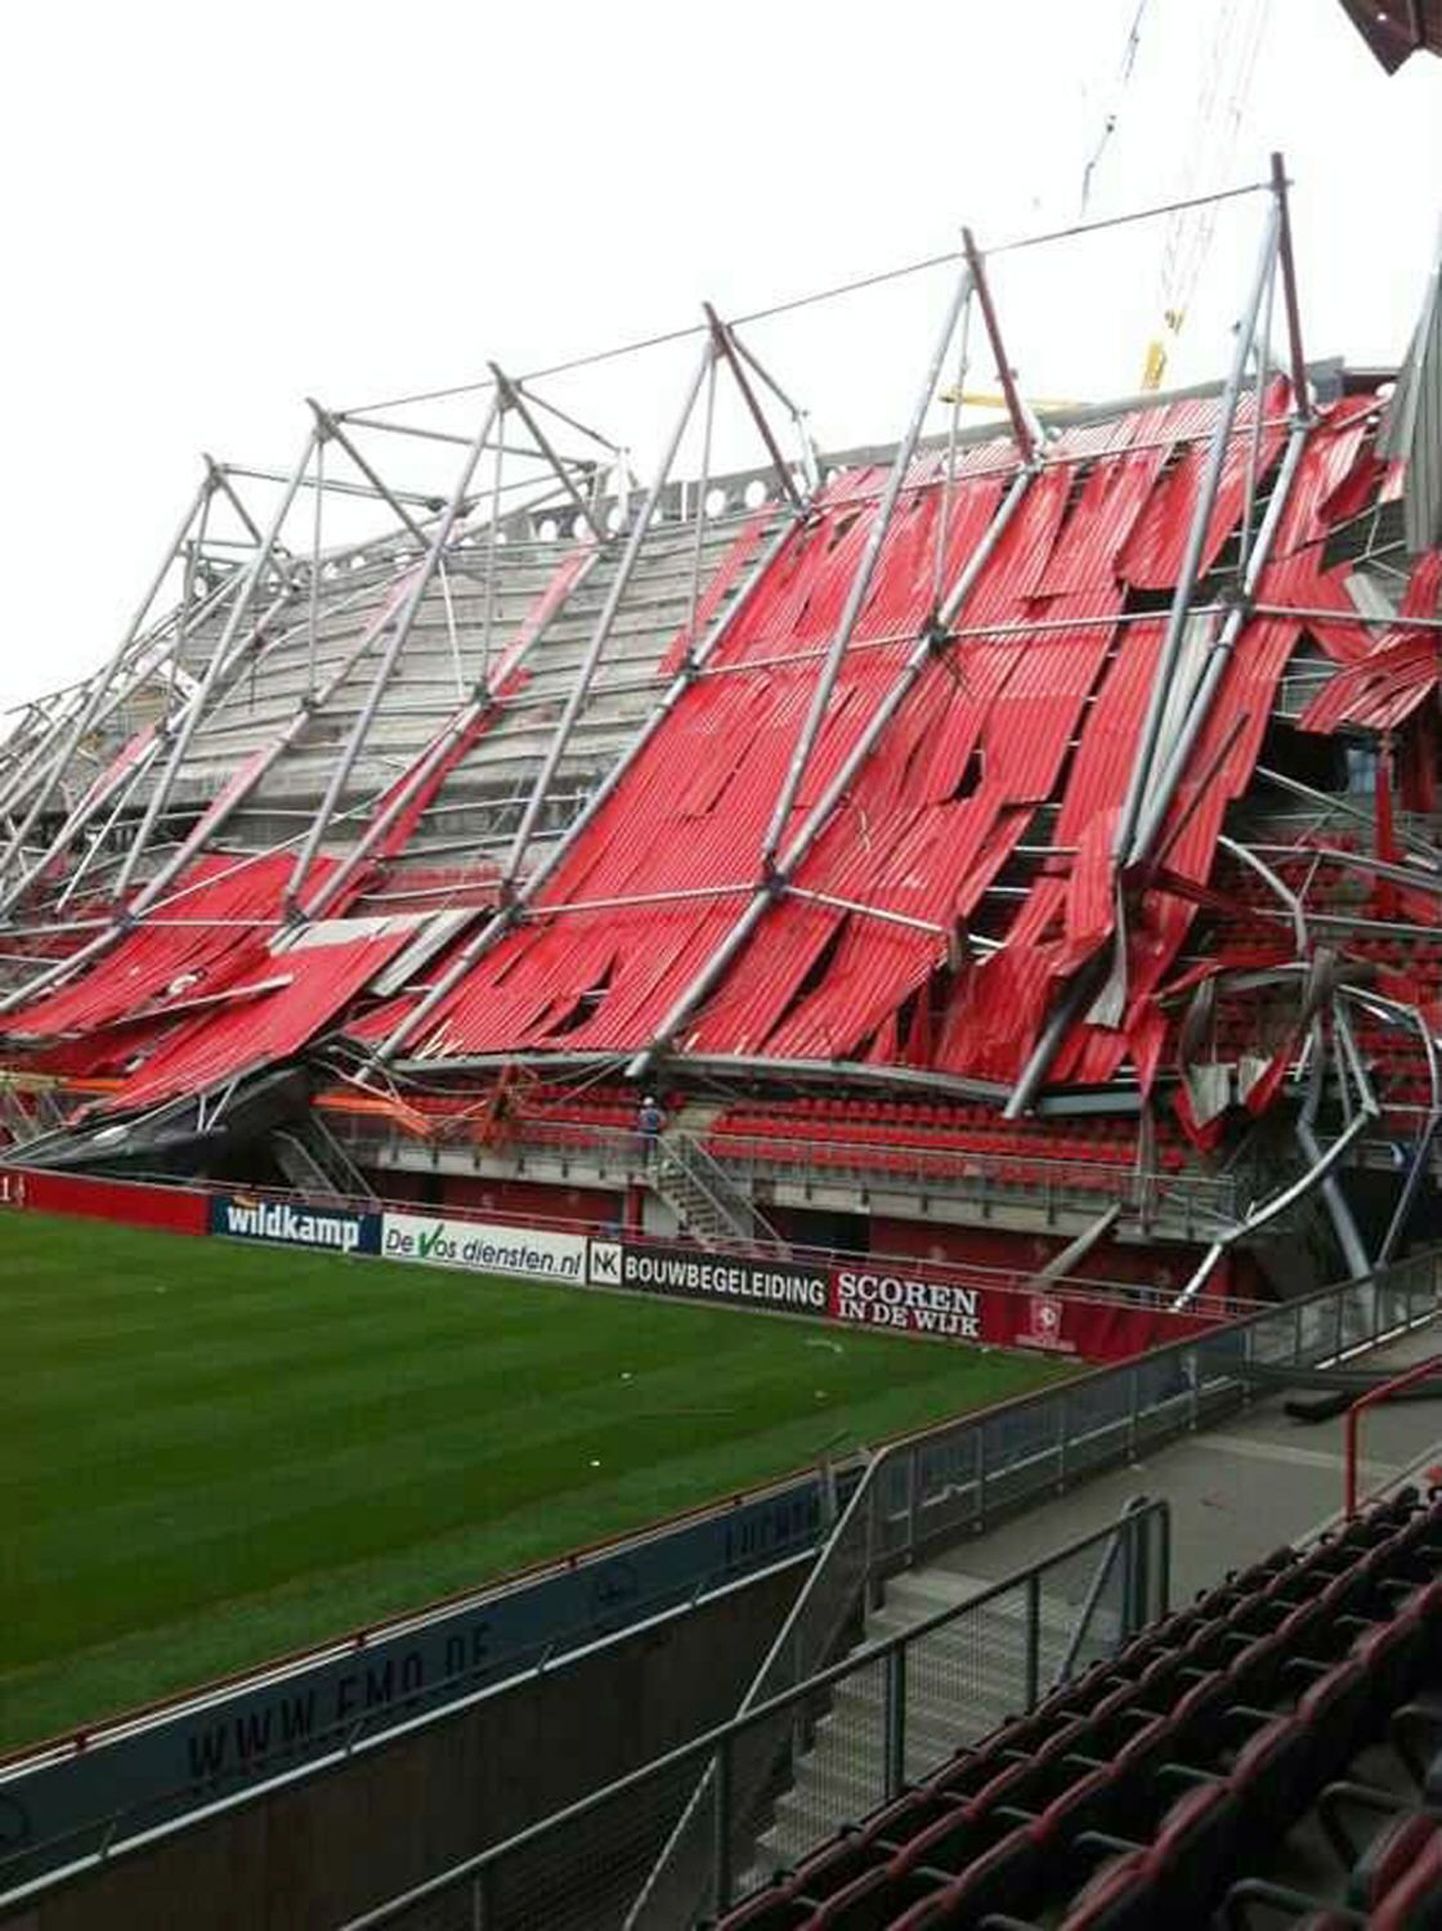 Точные причины обрушения крыши на стадионе в Энсхеде пока не установлены.